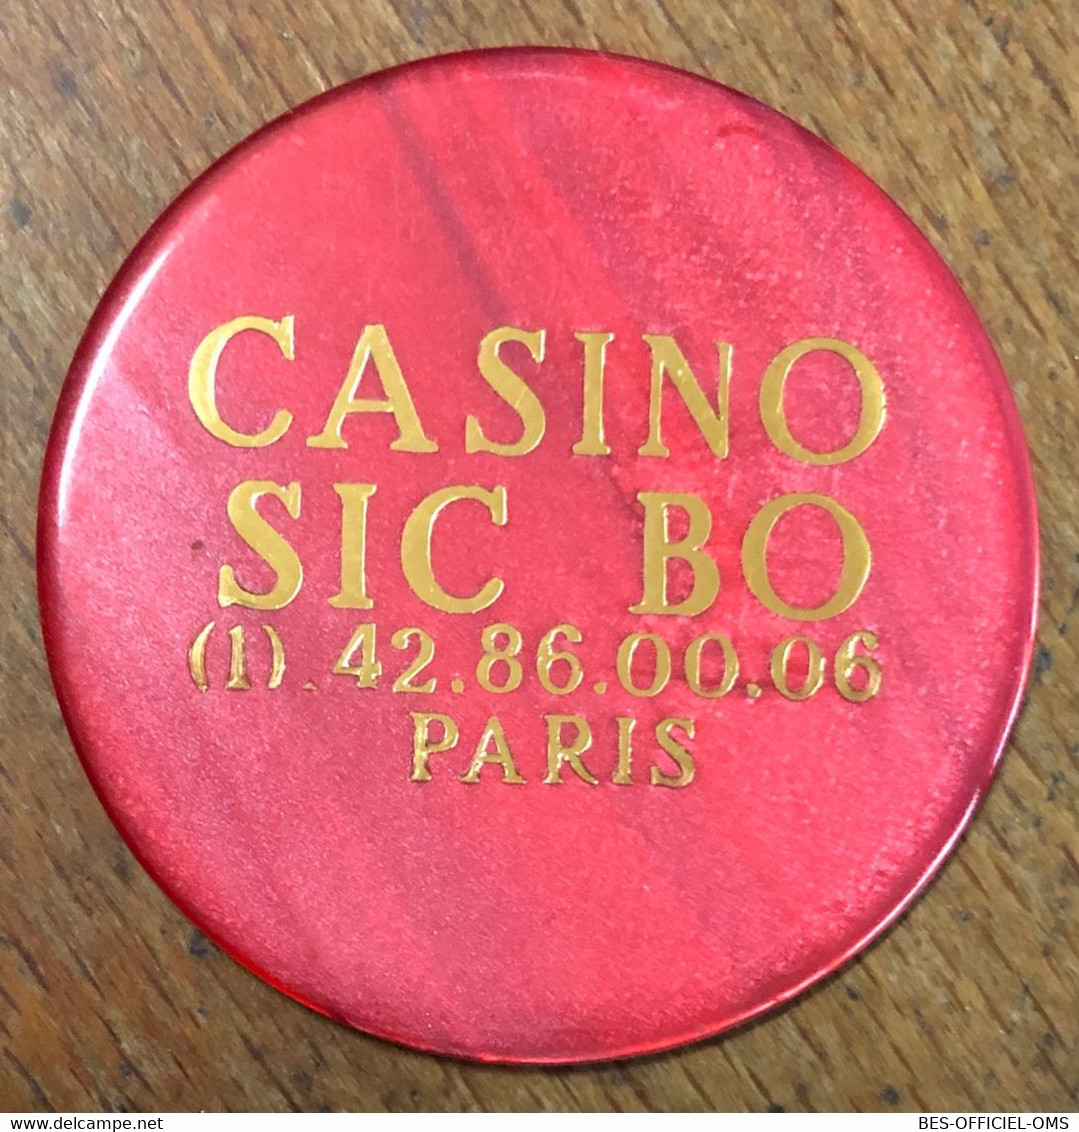 75 PARIS CASINO SIC BO JETON DE 500 CHIP TOKENS COINS GAMING - Casino